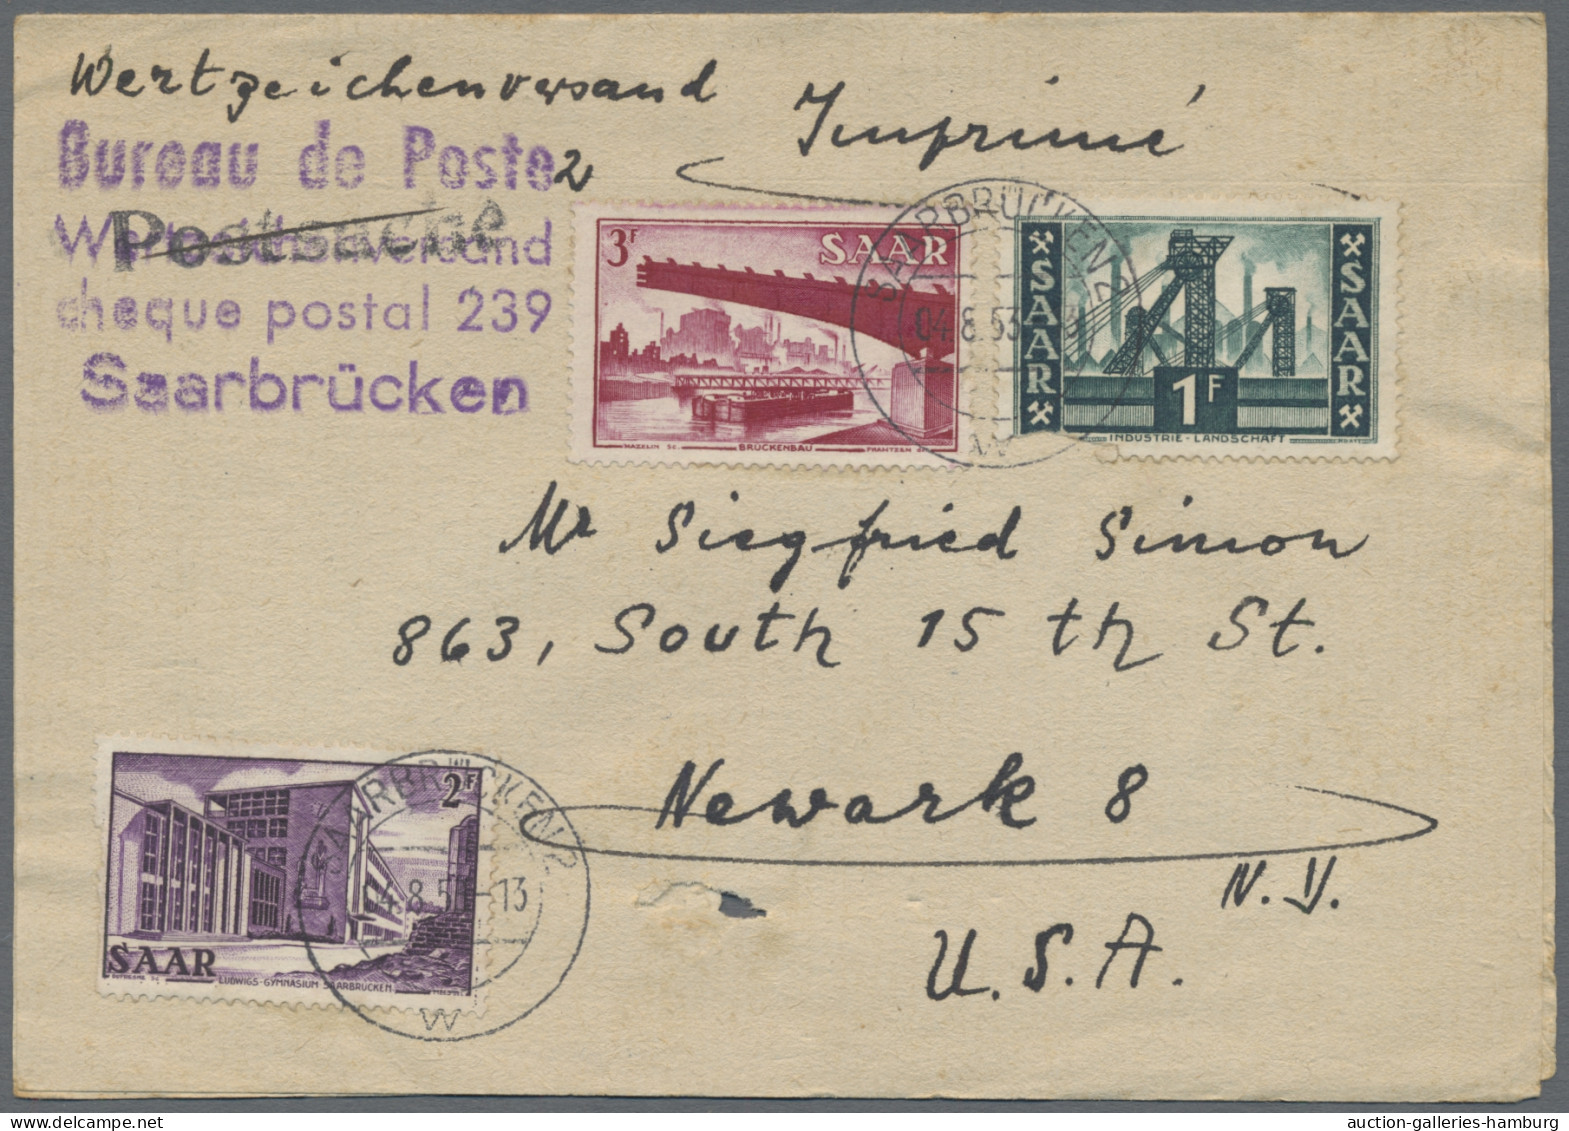 Saarland und OPD Saarbrücken: 1865-1959 (ca.), spannende und gehaltvolle Partie